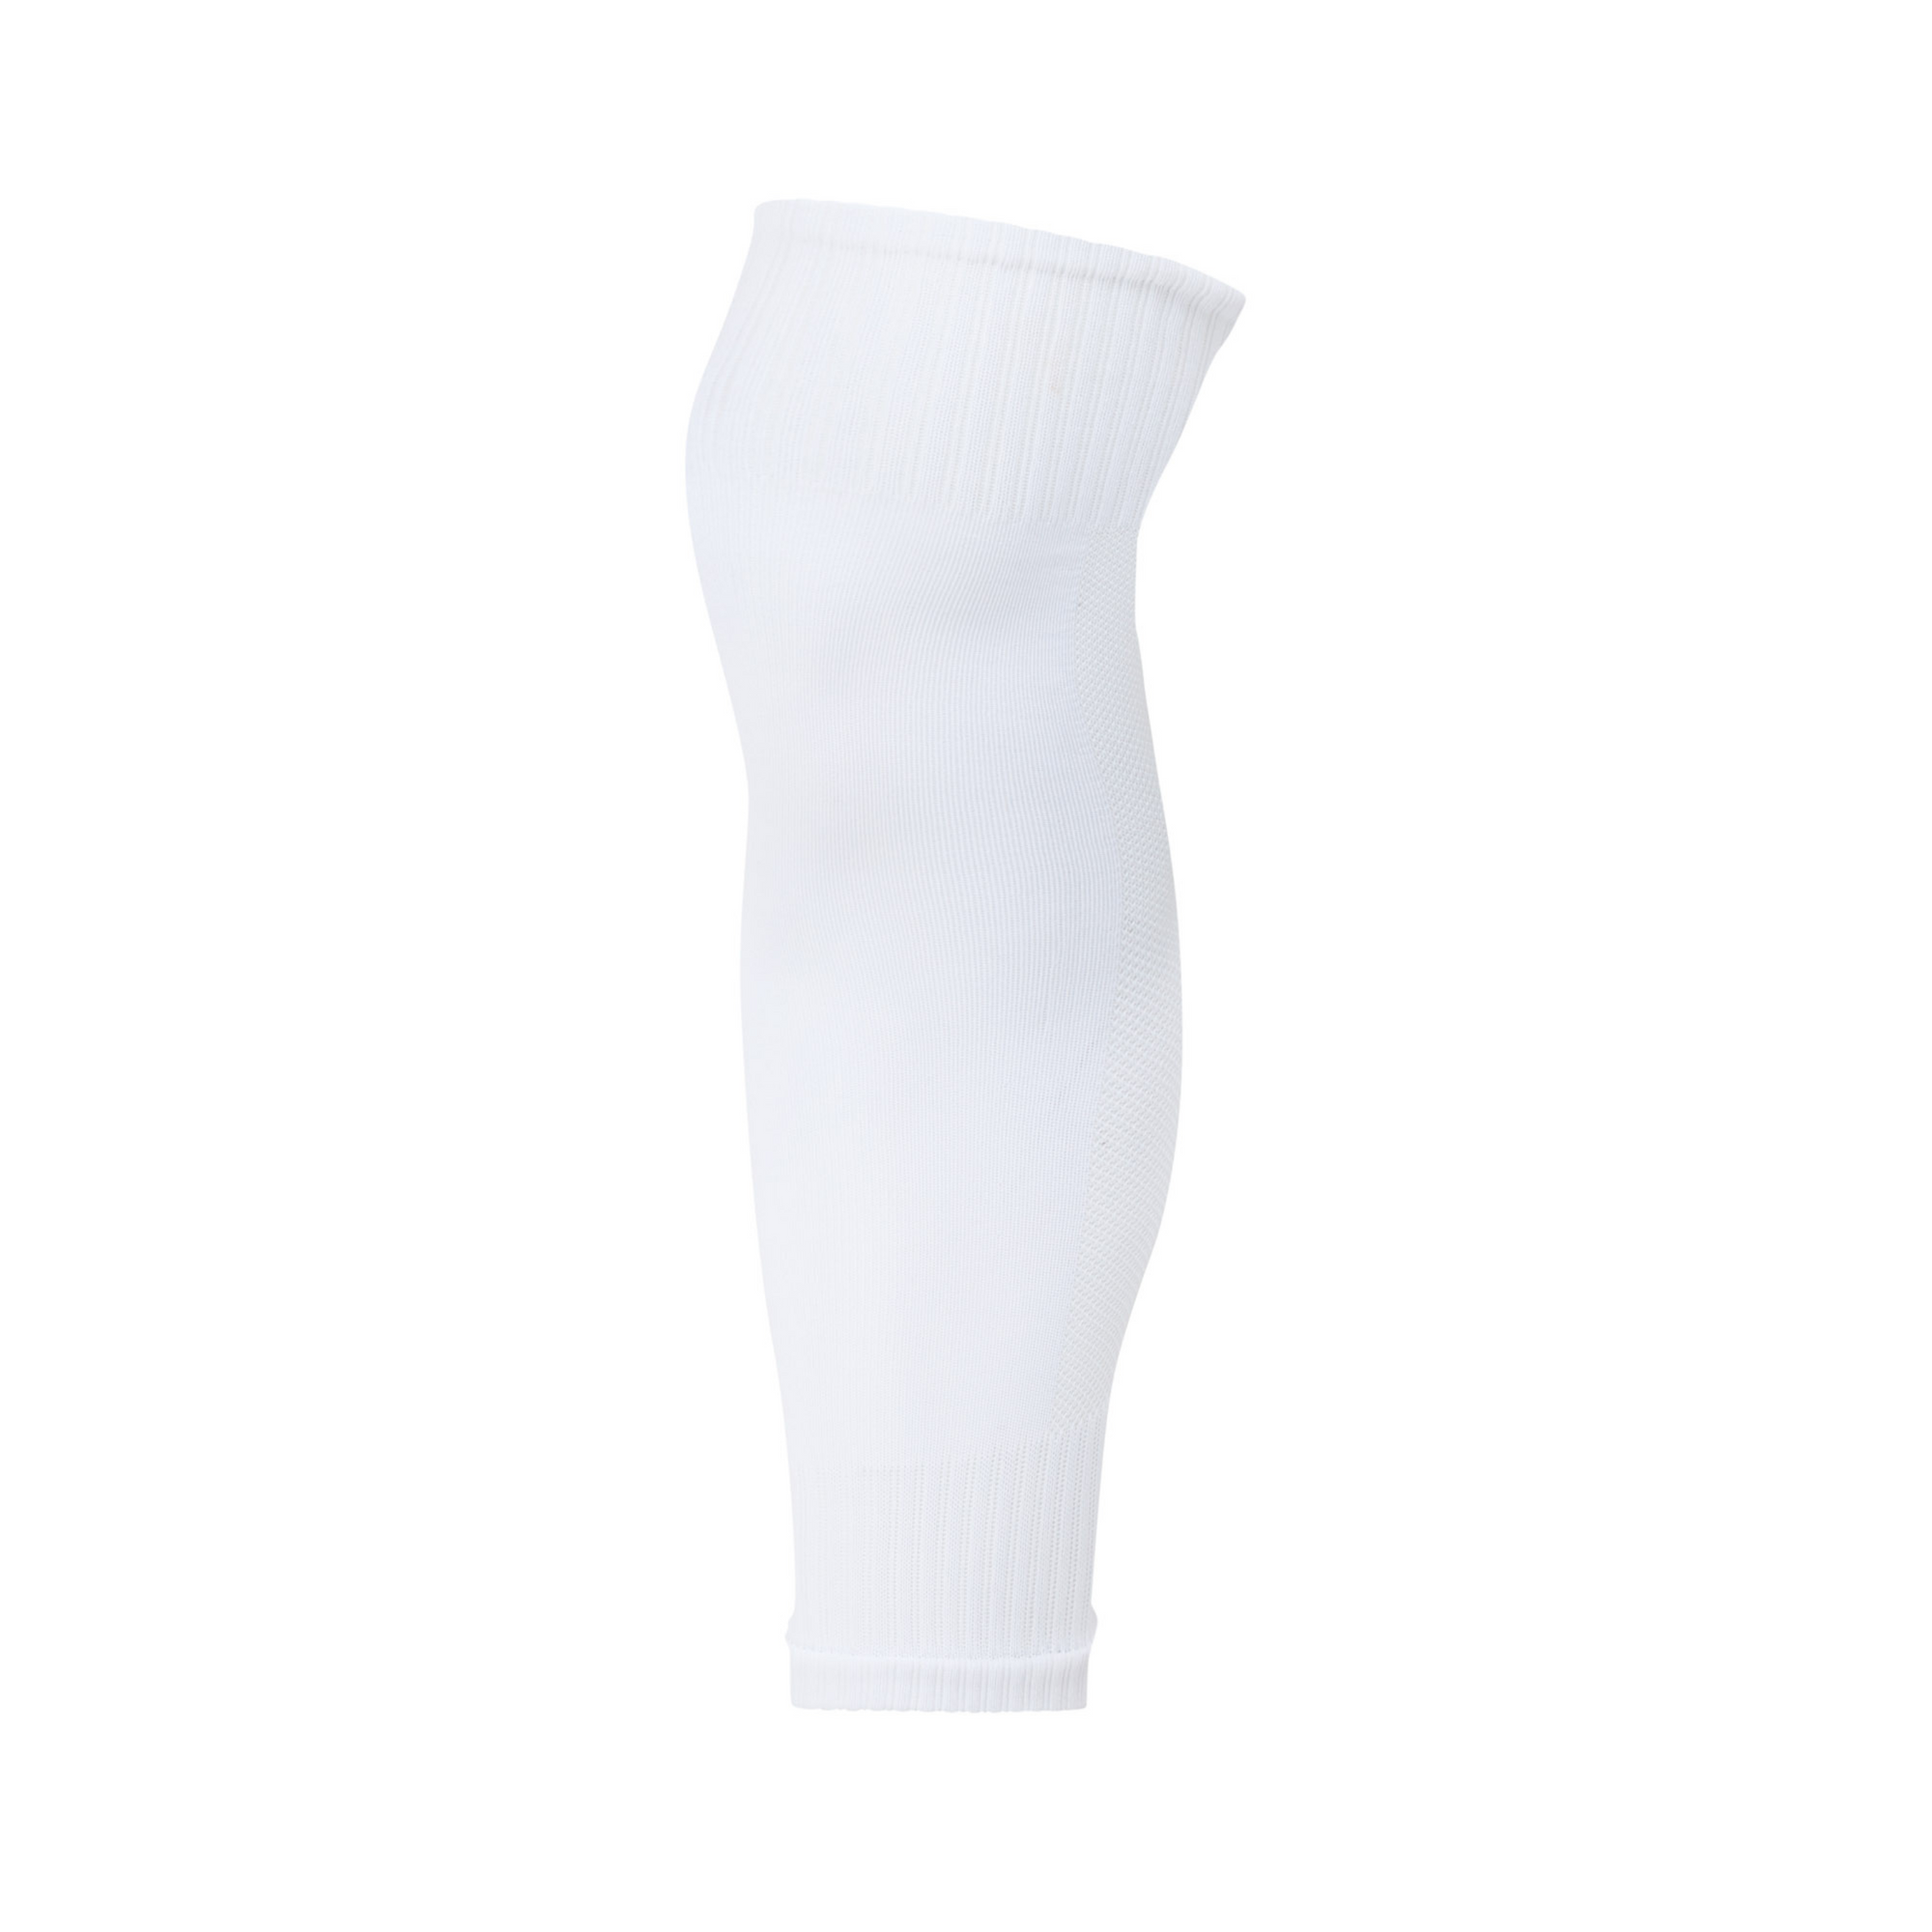 JOGA Sock Sleeve - White